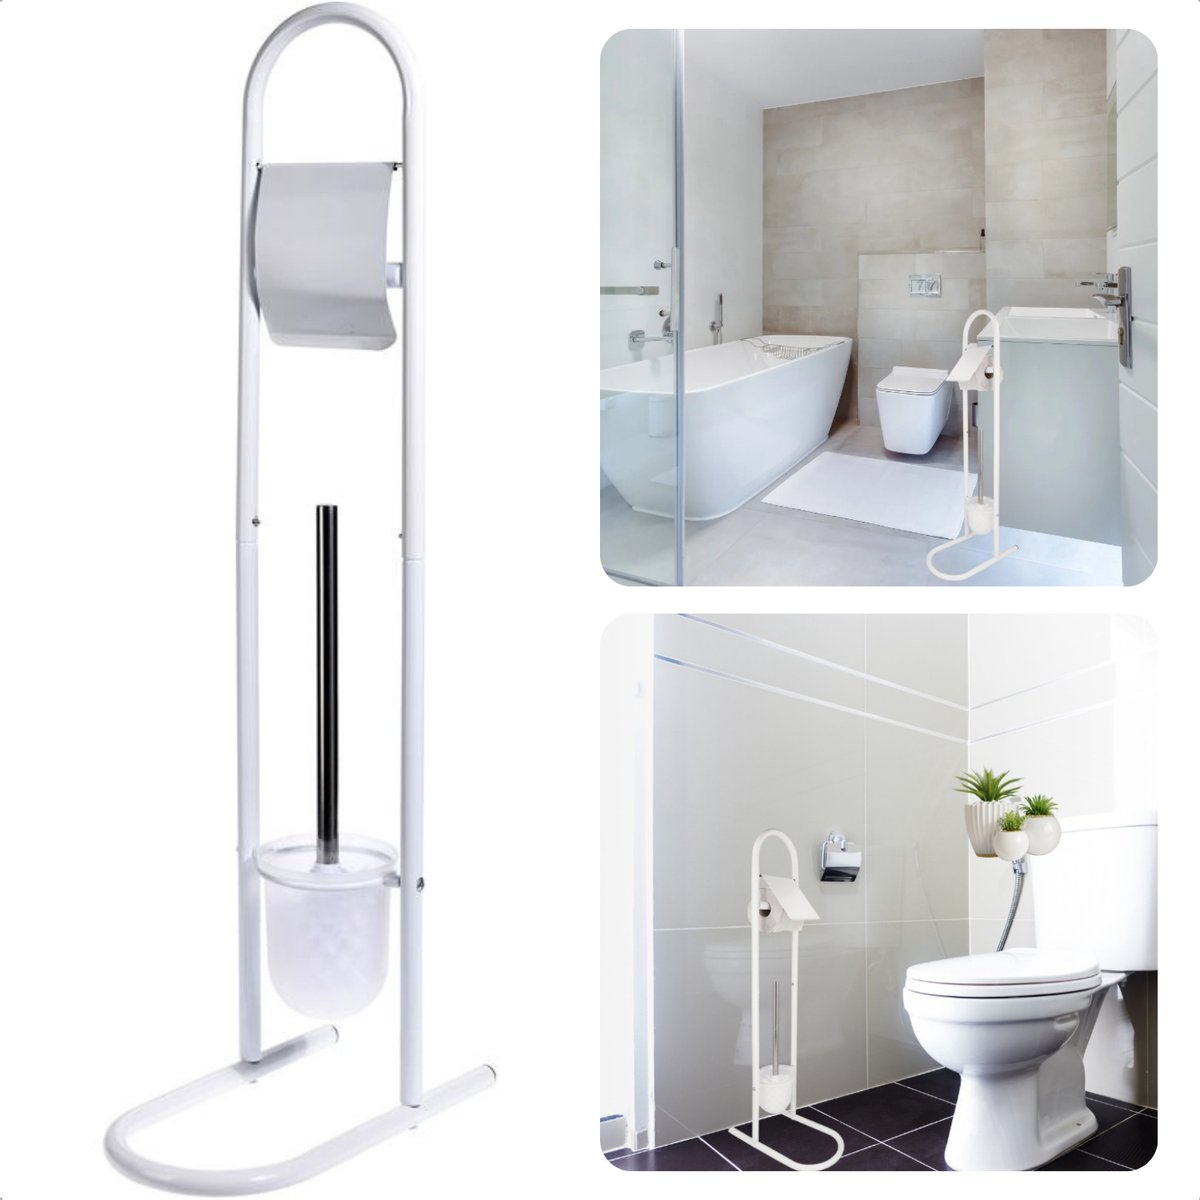 Cheqo® Toiletborstel met Houder - Toiletbutler - Toiletrolhouder - WC Borstel met Houder - Rolhouder - Wit Gelakte Metalen Buizen - Kunststof - 30x16x78cm